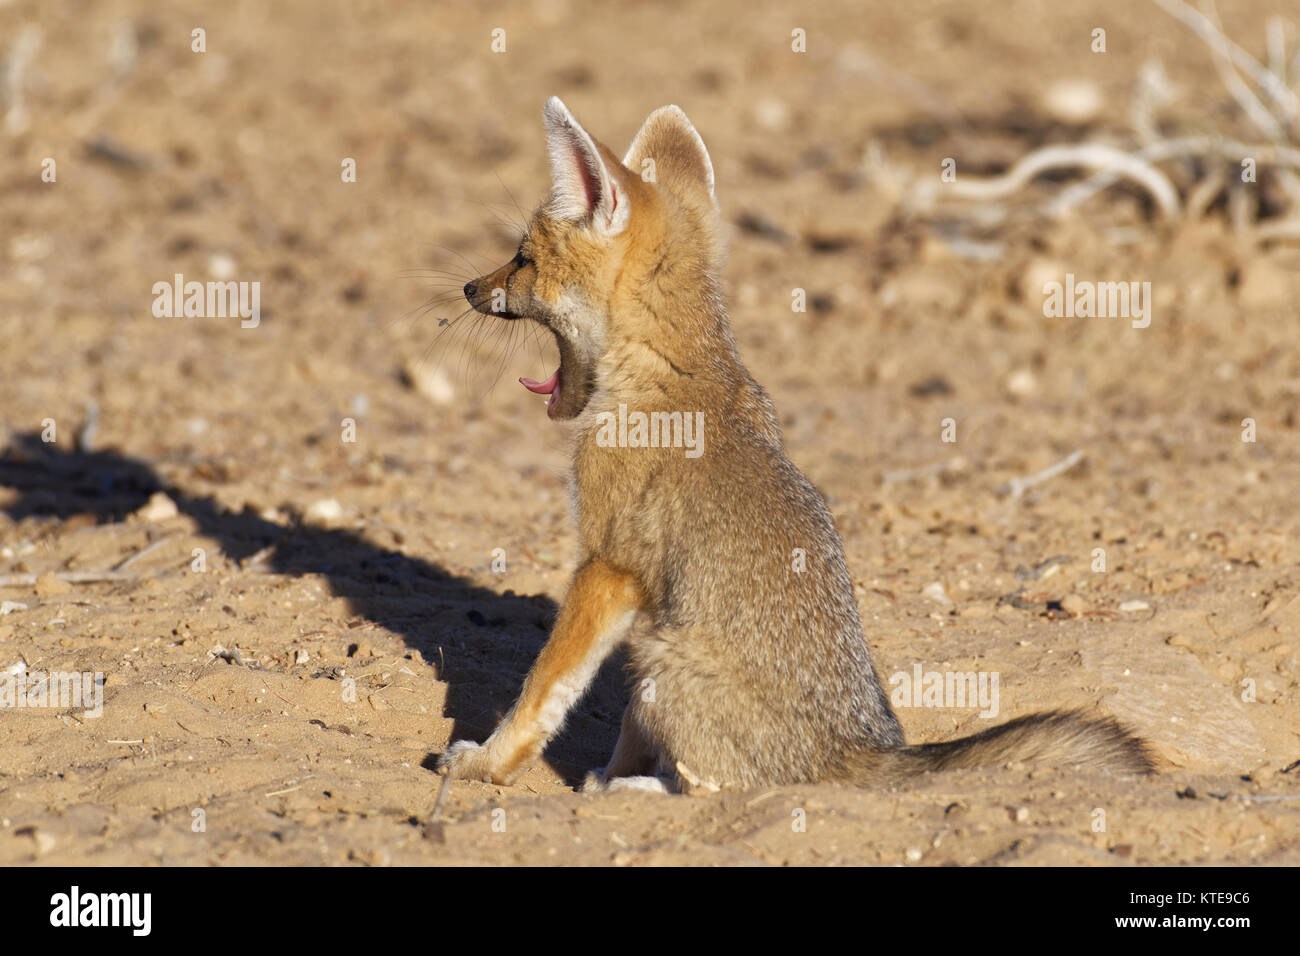 Cape Fox (Vulpes chama), cub Gähnen zu graben, Eingang, Abendlicht, Kgalagadi Transfrontier Park, Northern Cape, Südafrika, Afrika Stockfoto